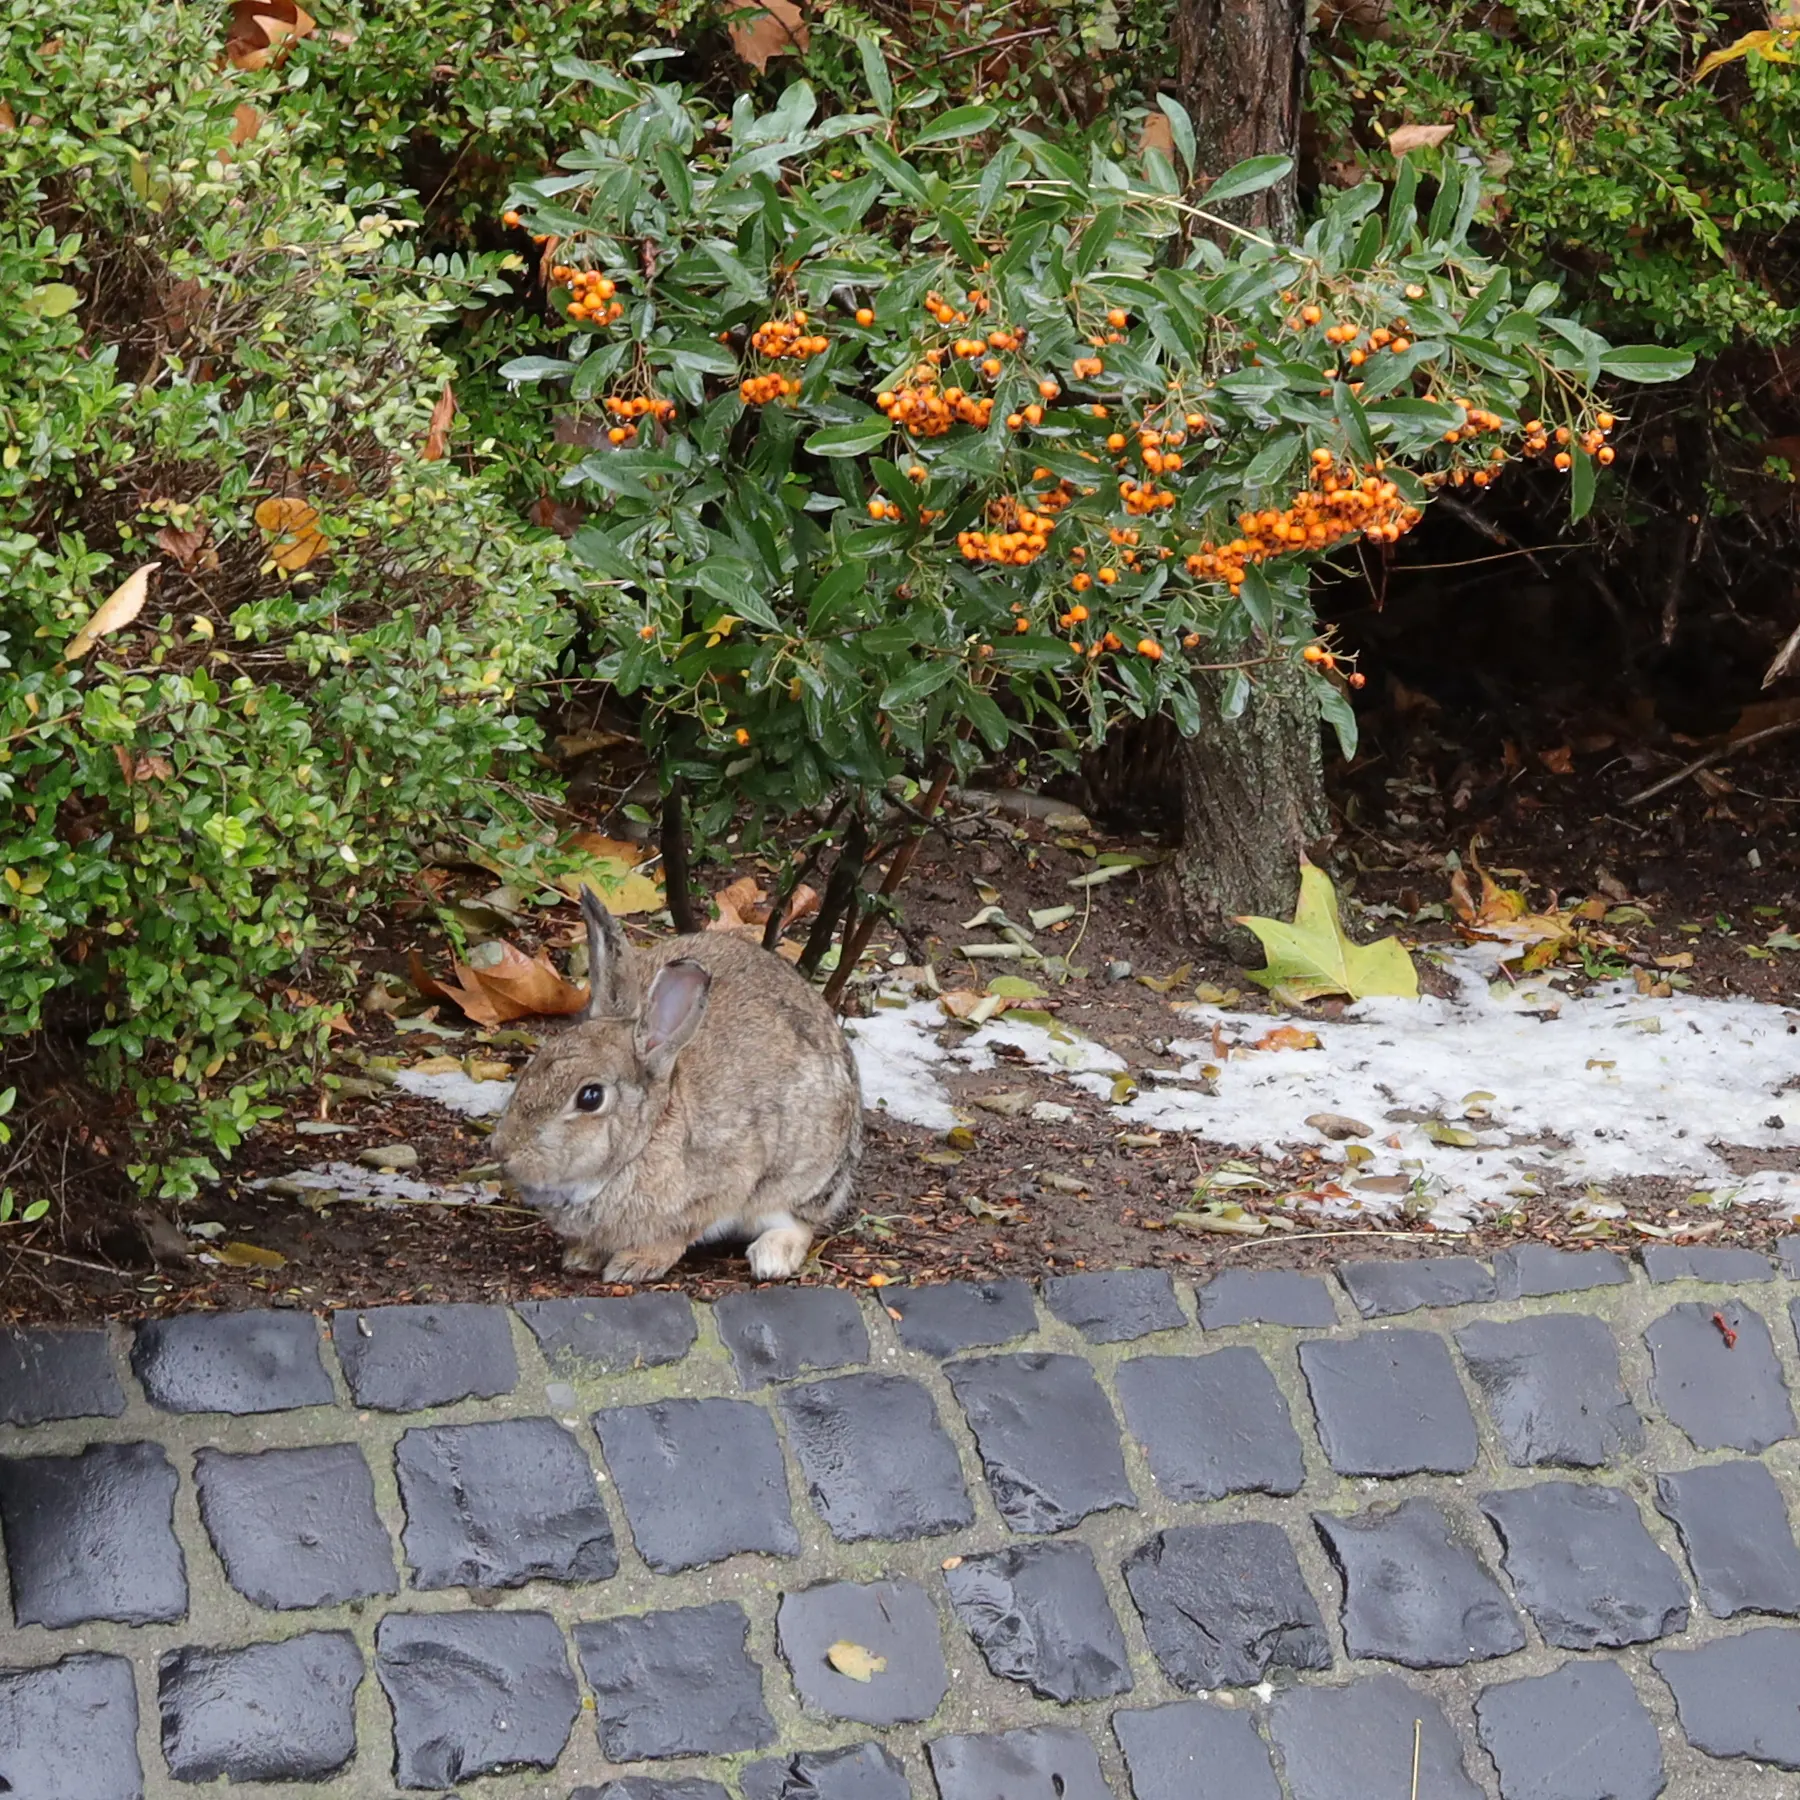 Rabbit in a front garden